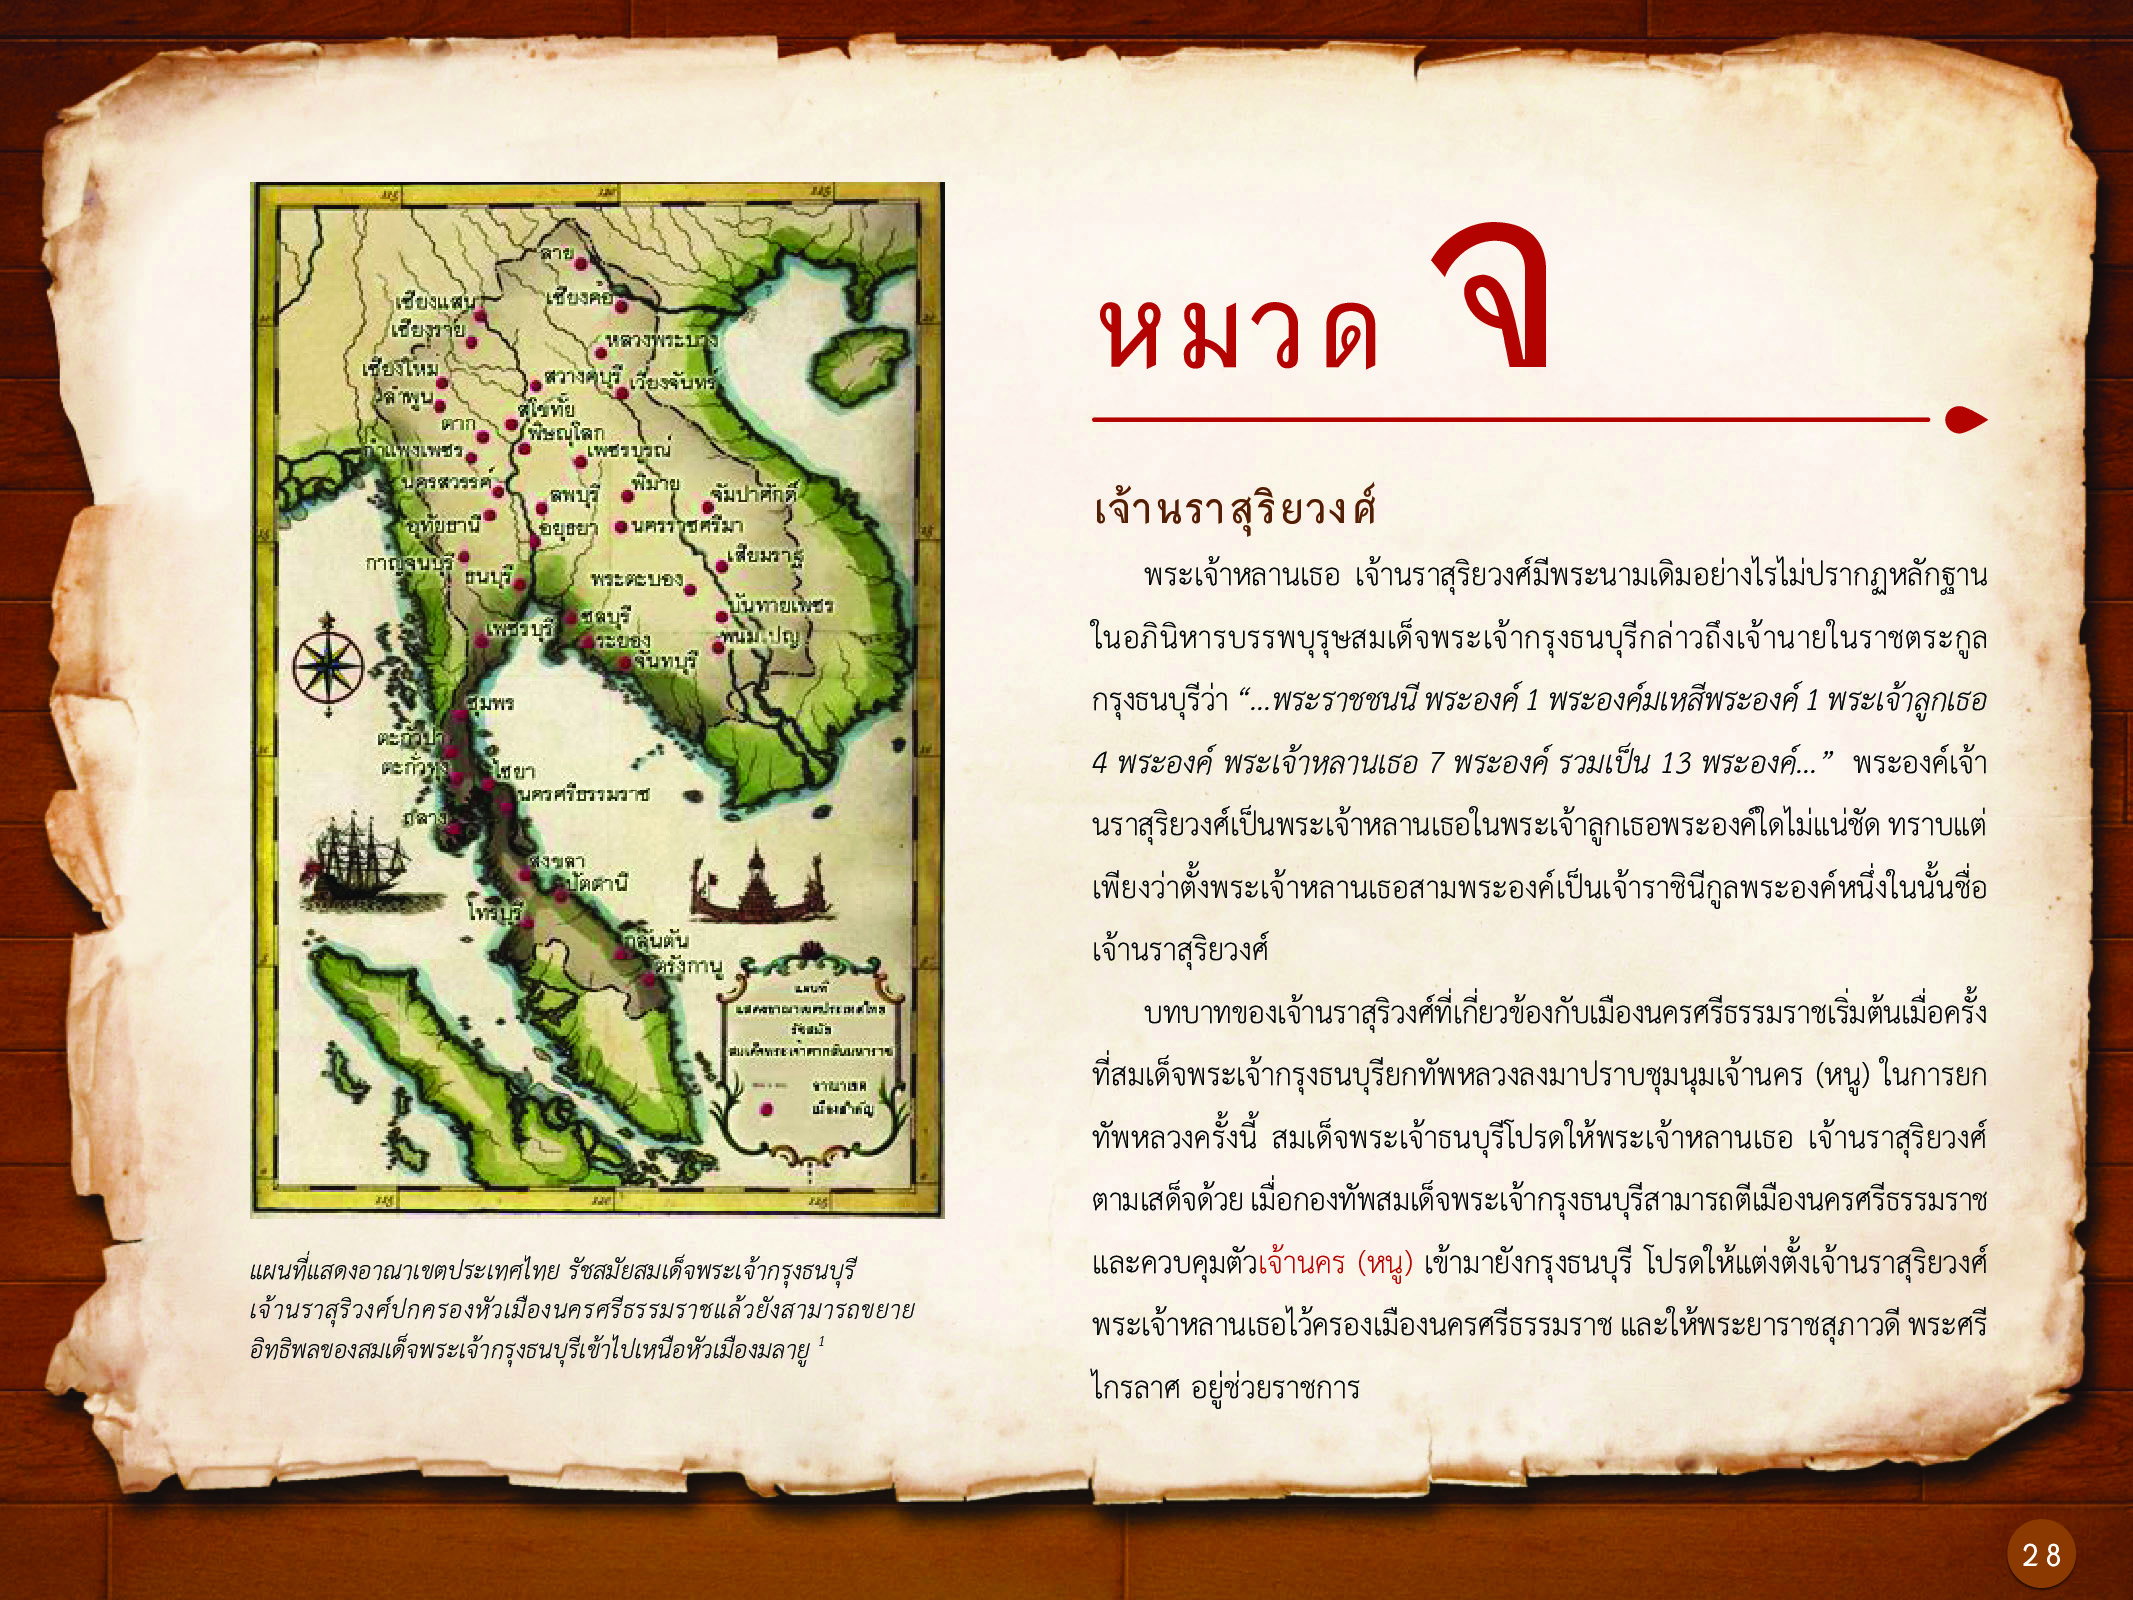 ประวัติศาสตร์กรุงธนบุรี ./images/history_dhonburi/28.jpg